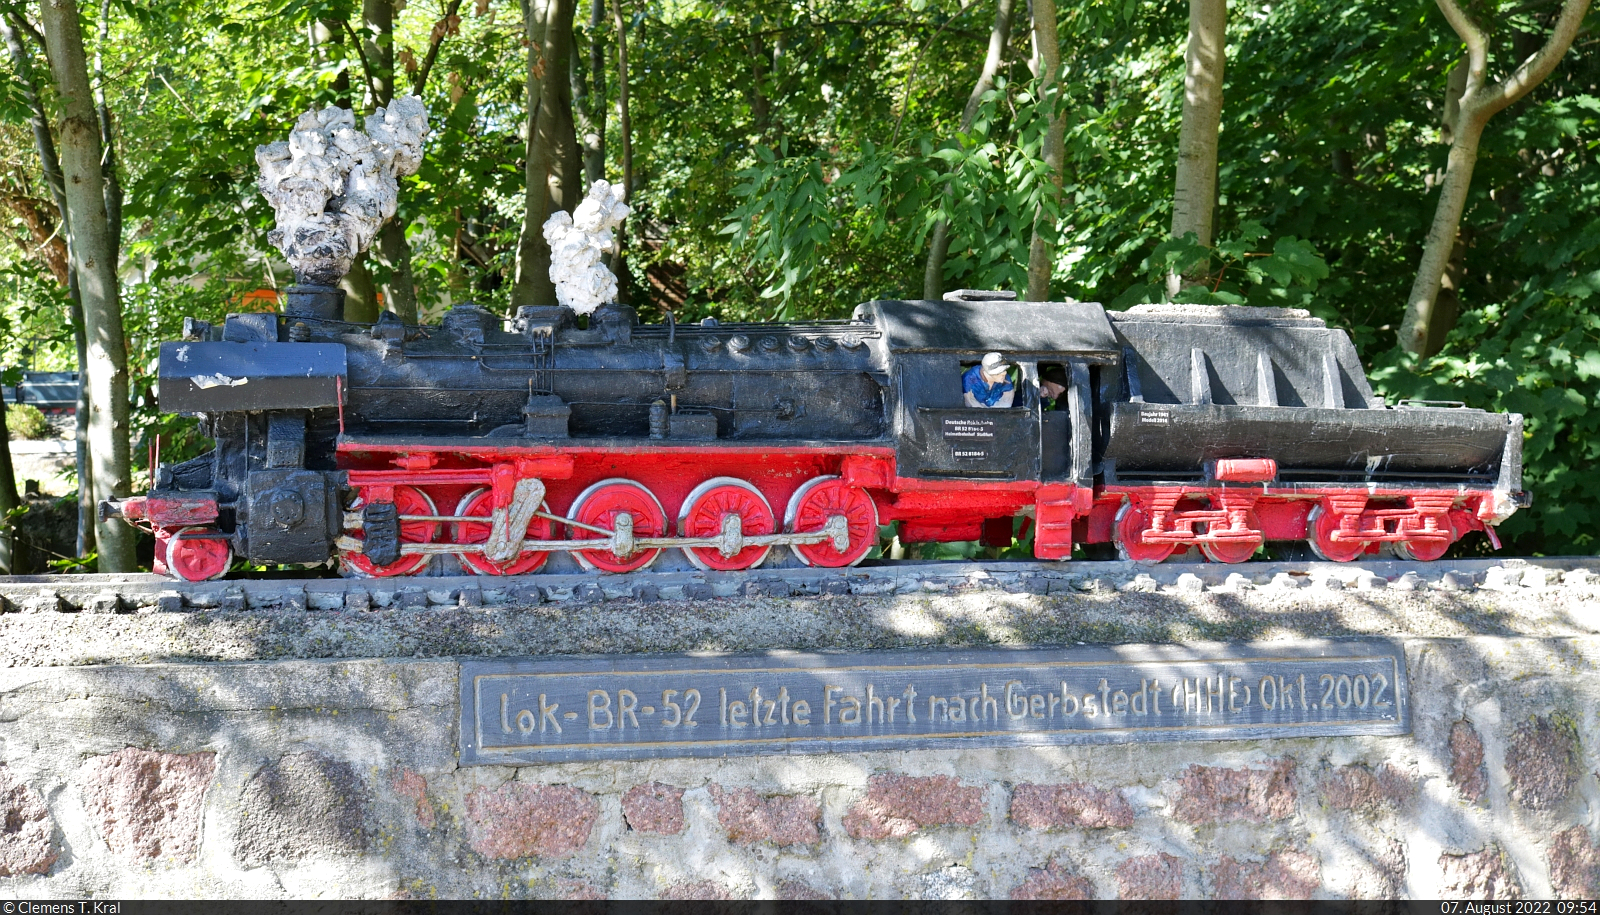 Beton-Modellbahn in Gerbstedt
In Erinnerung an die letzte Fahrt von Hettstedt nach Gerbstedt im Oktober 2002 wurde diese Nachbildung einer 52er-Dampflok aufgestellt. Ob damals – wie angeschrieben – die 52 8184-5 eingesetzt war, die heute den Eisenbahnfreunden Traditionsbahnbetriebswerk Staßfurt e.V. gehört, bleibt wohl Geheimnis bzw. Fantasie des Schöpfers.

🧰 Verein Freunde der Halle-Hettstedter-Eisenbahn e.V.
🕓 7.8.2022 | 9:54 Uhr